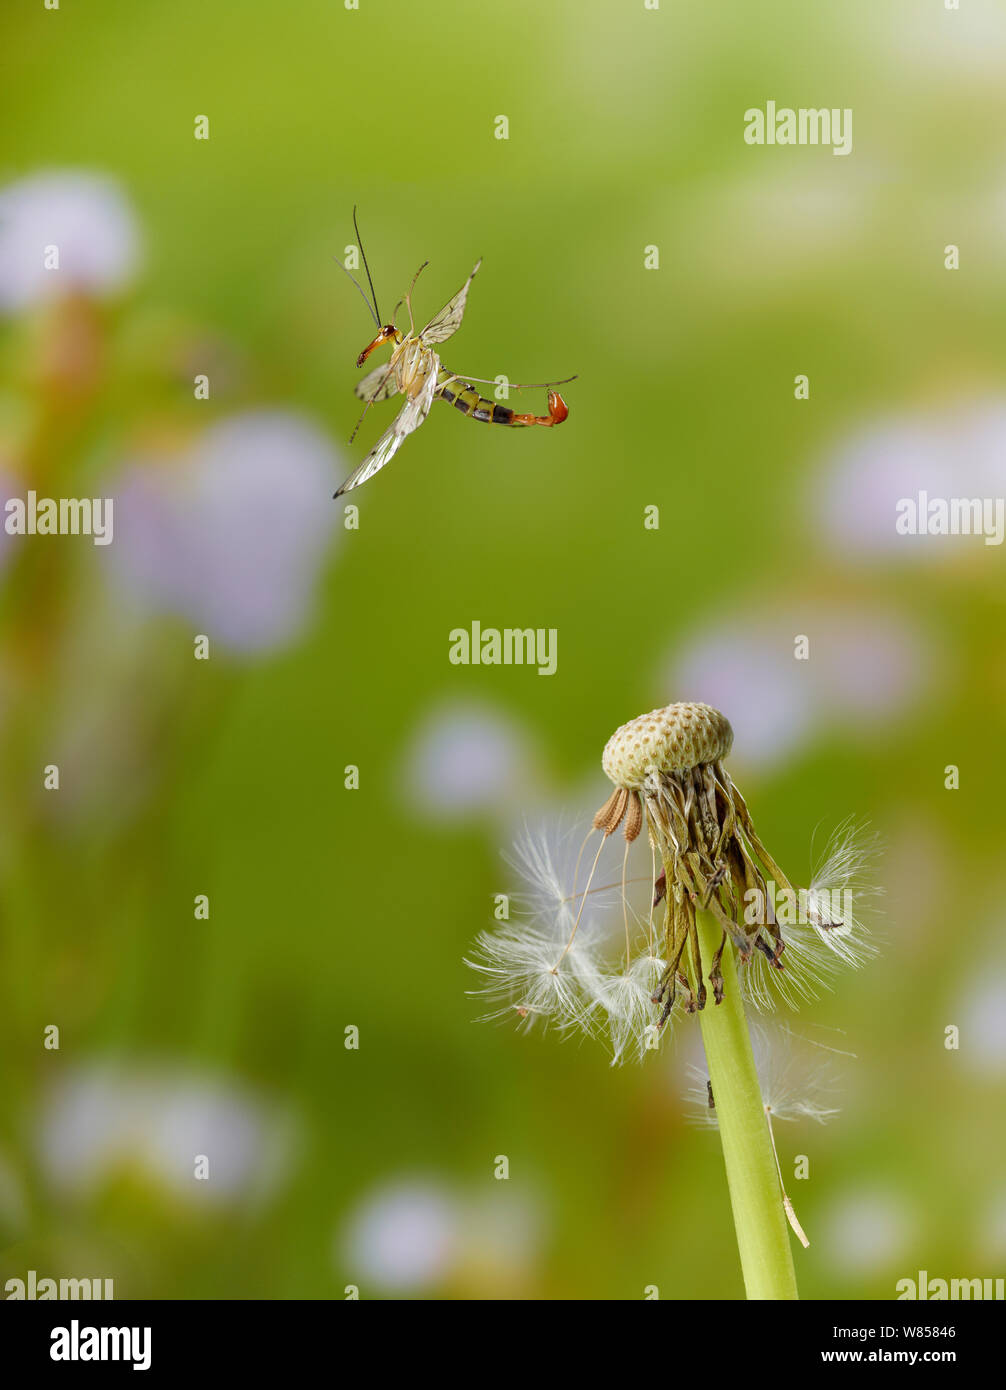 (Scorpionfly Panorpa sp) gerade weg genommen, Sussex, England. Kontrollierten Bedingungen. Stockfoto